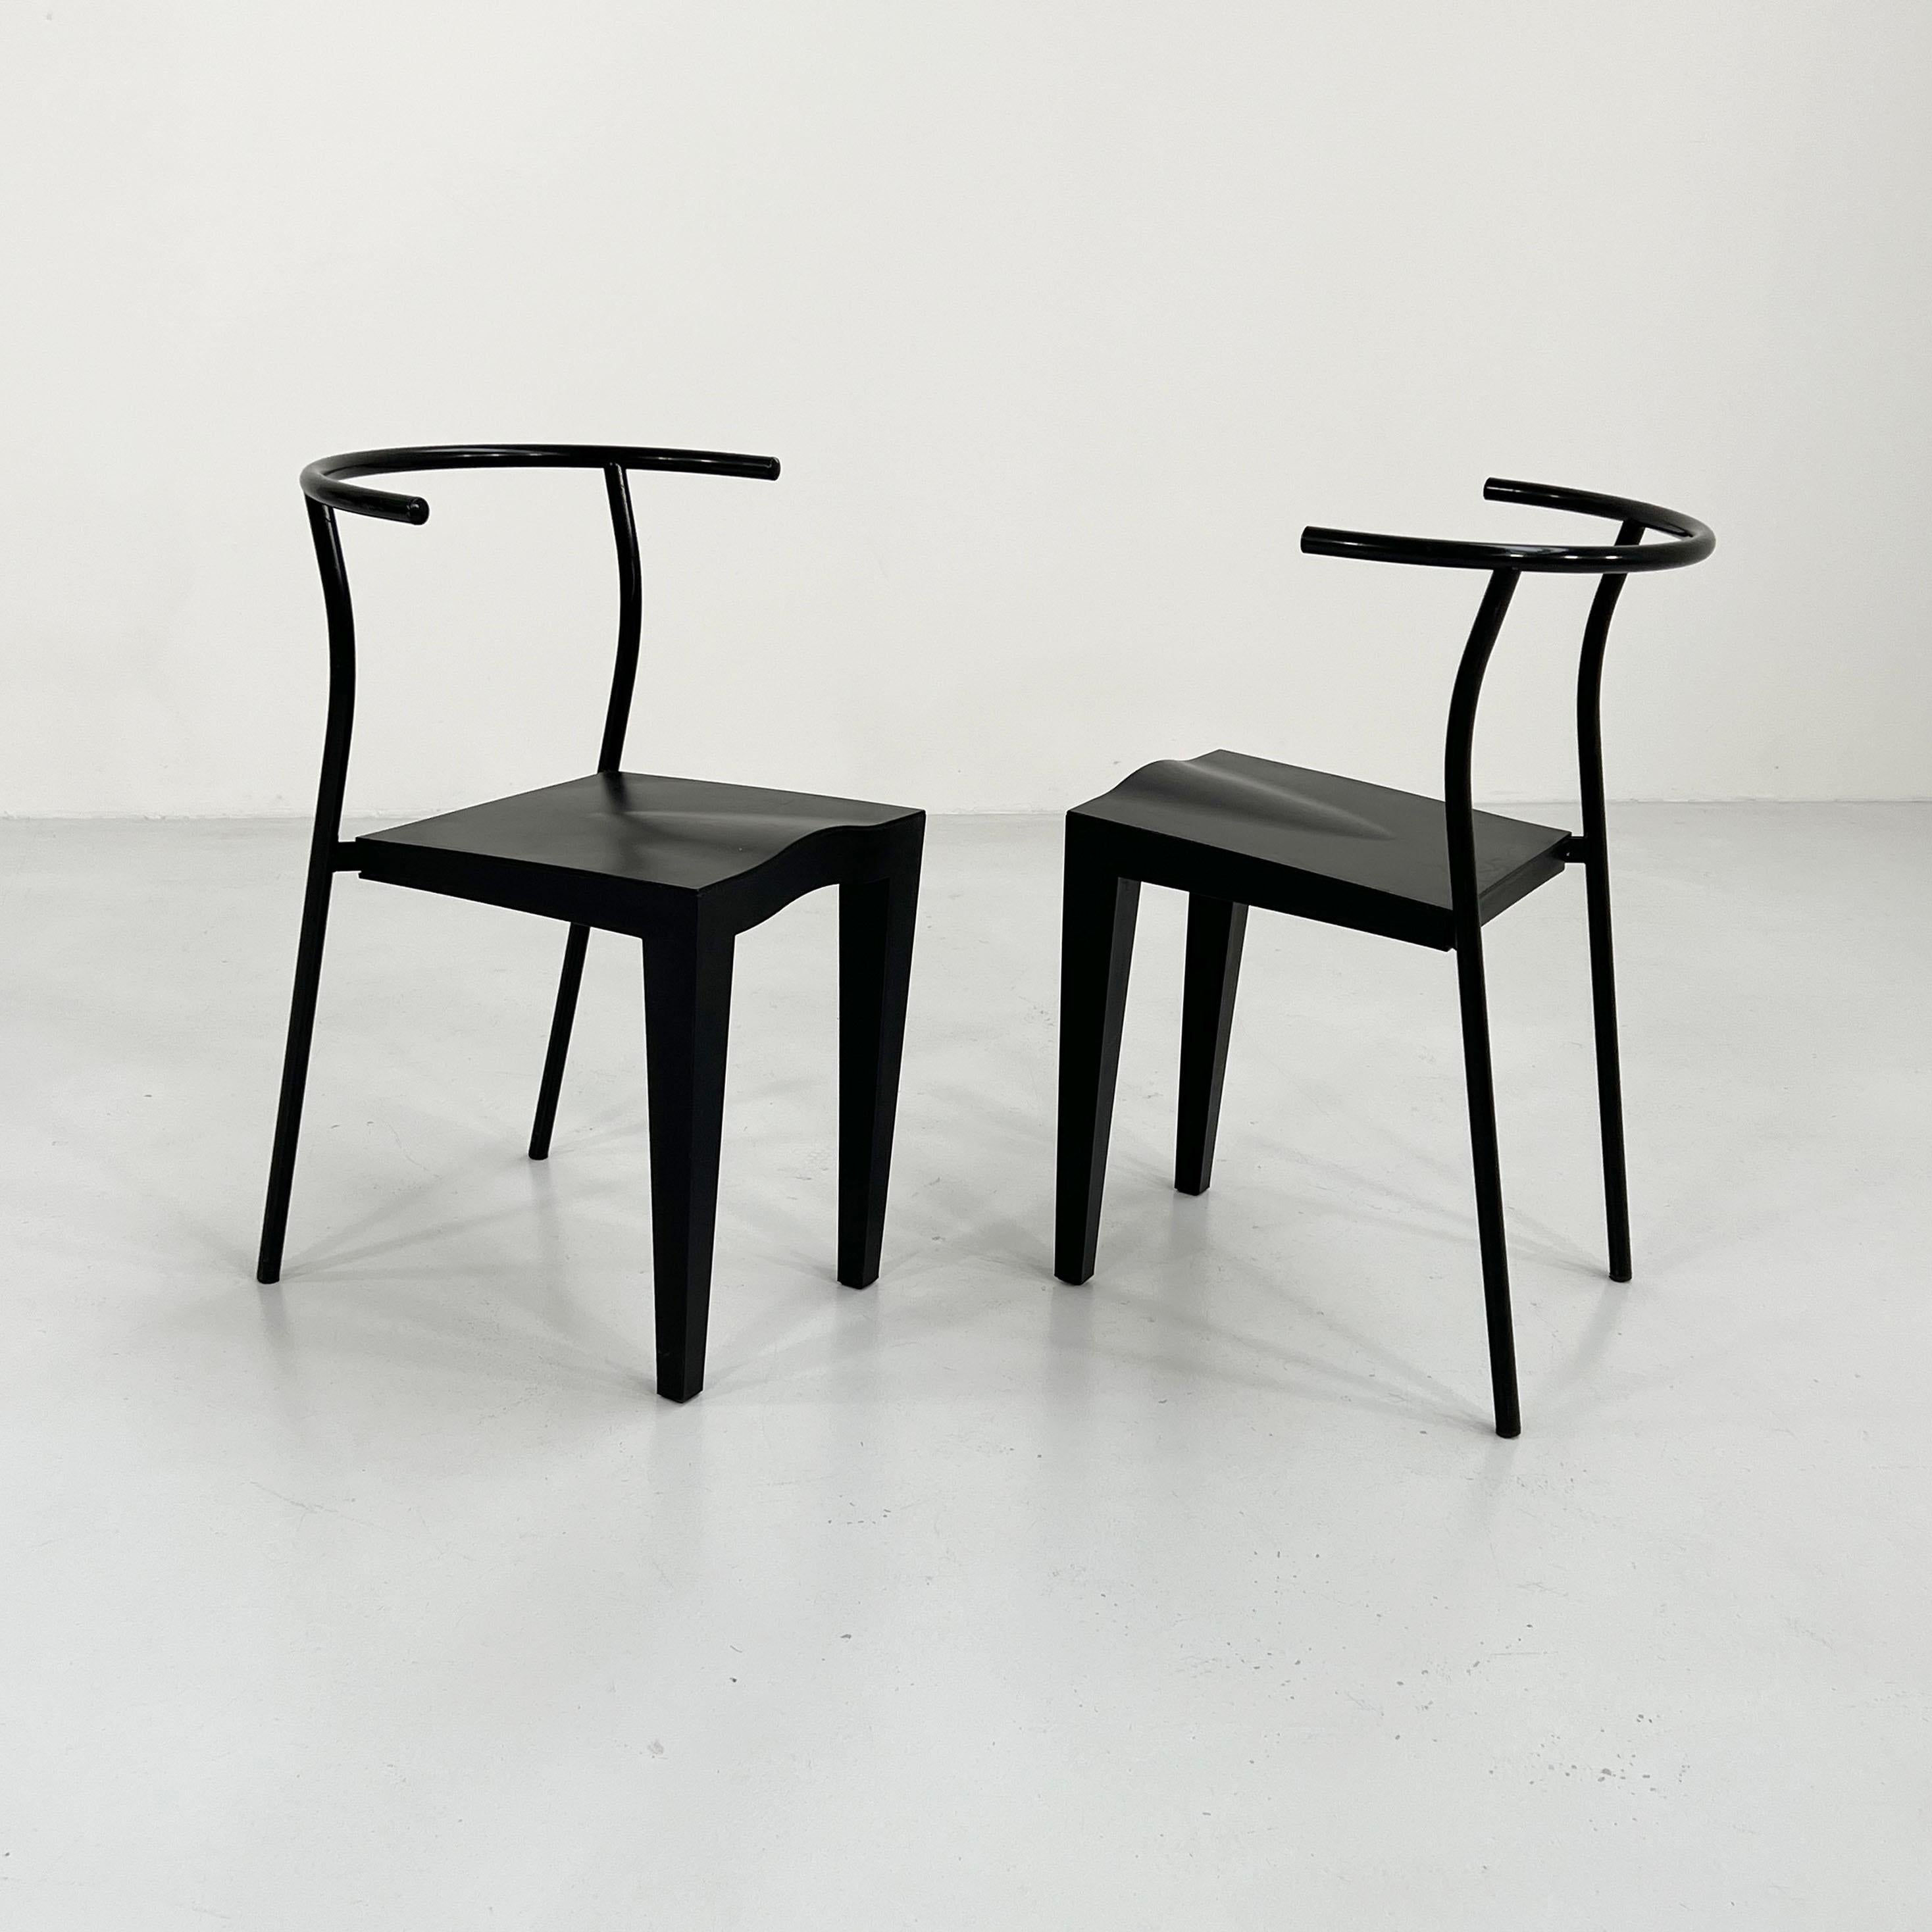 Fin du 20e siècle Ensemble de 4 chaises Dr. Glob de Philippe Starck pour Kartell, années 1980